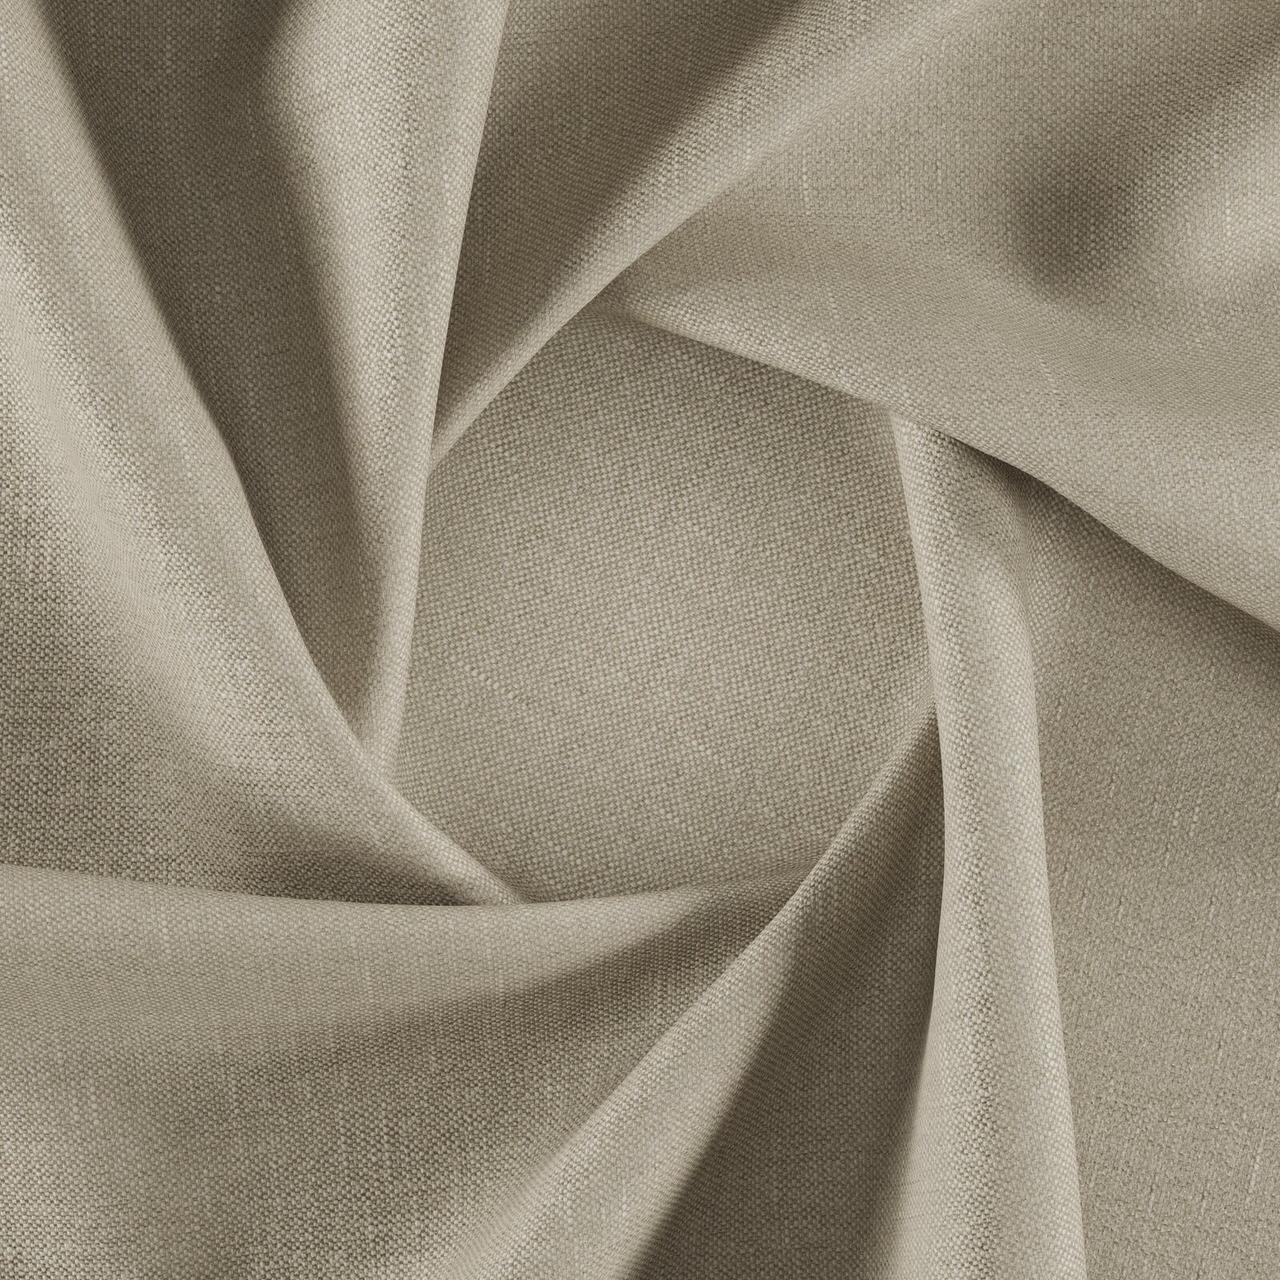 Тканина для перетяжки м'яких меблів шеніл Перфекто (Perfecto) пісочно-бежевого кольору